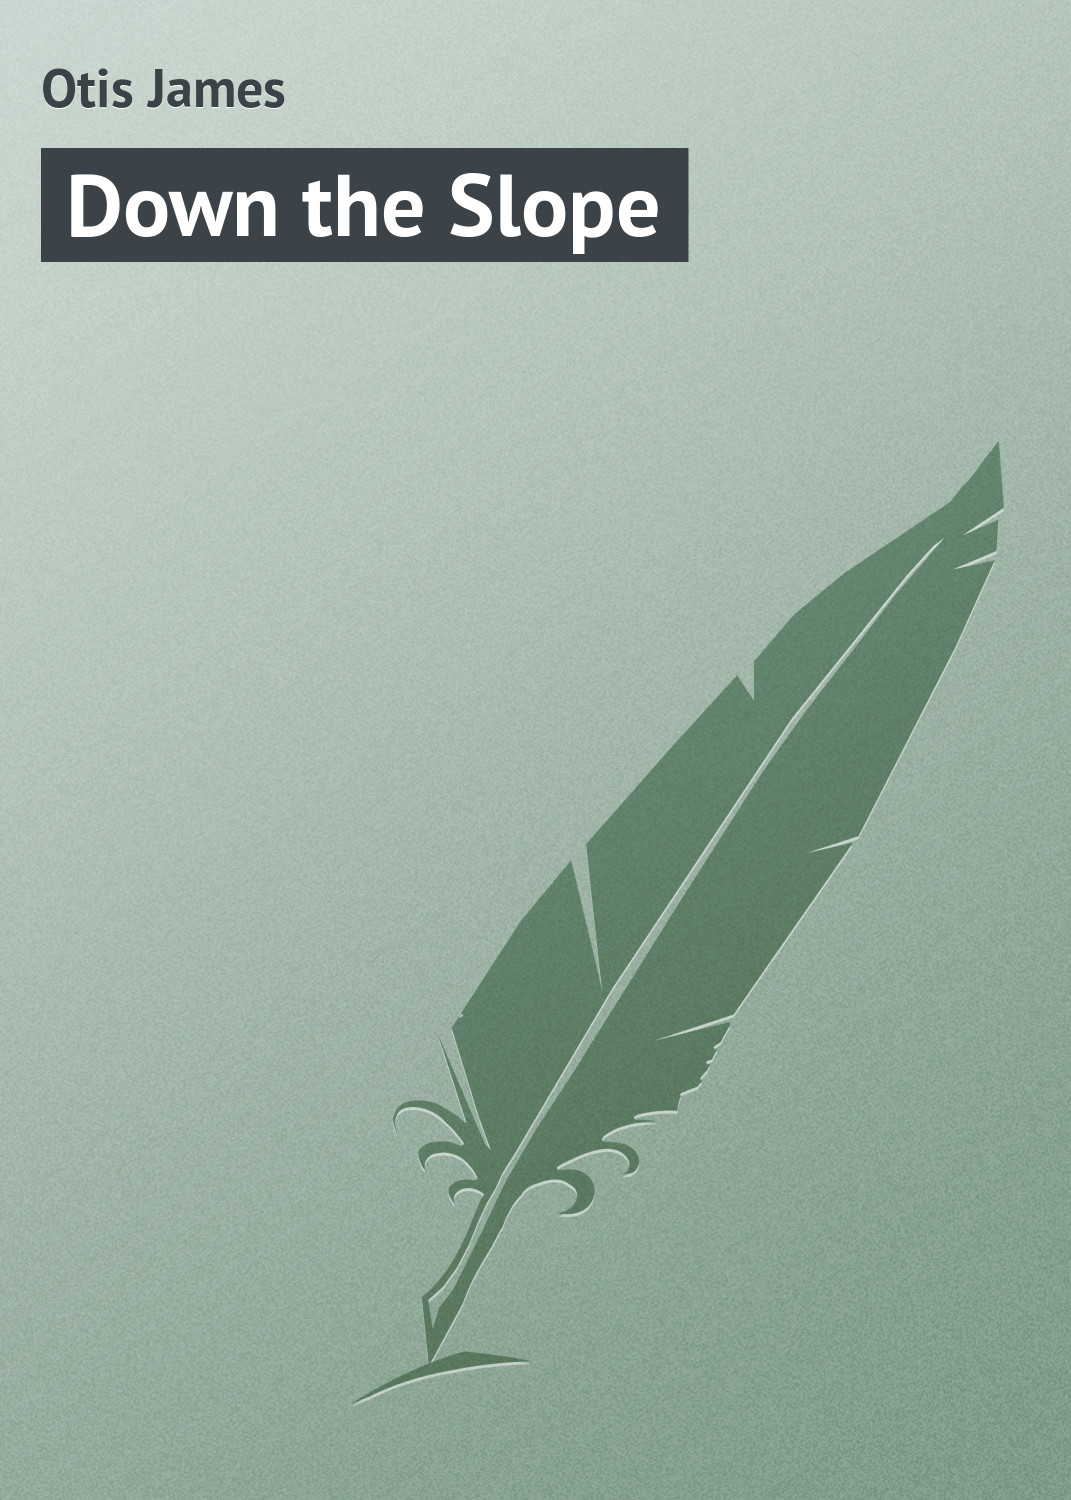 Книга Down the Slope из серии , созданная James Otis, может относится к жанру Зарубежная классика, Зарубежные детские книги. Стоимость электронной книги Down the Slope с идентификатором 23157619 составляет 5.99 руб.